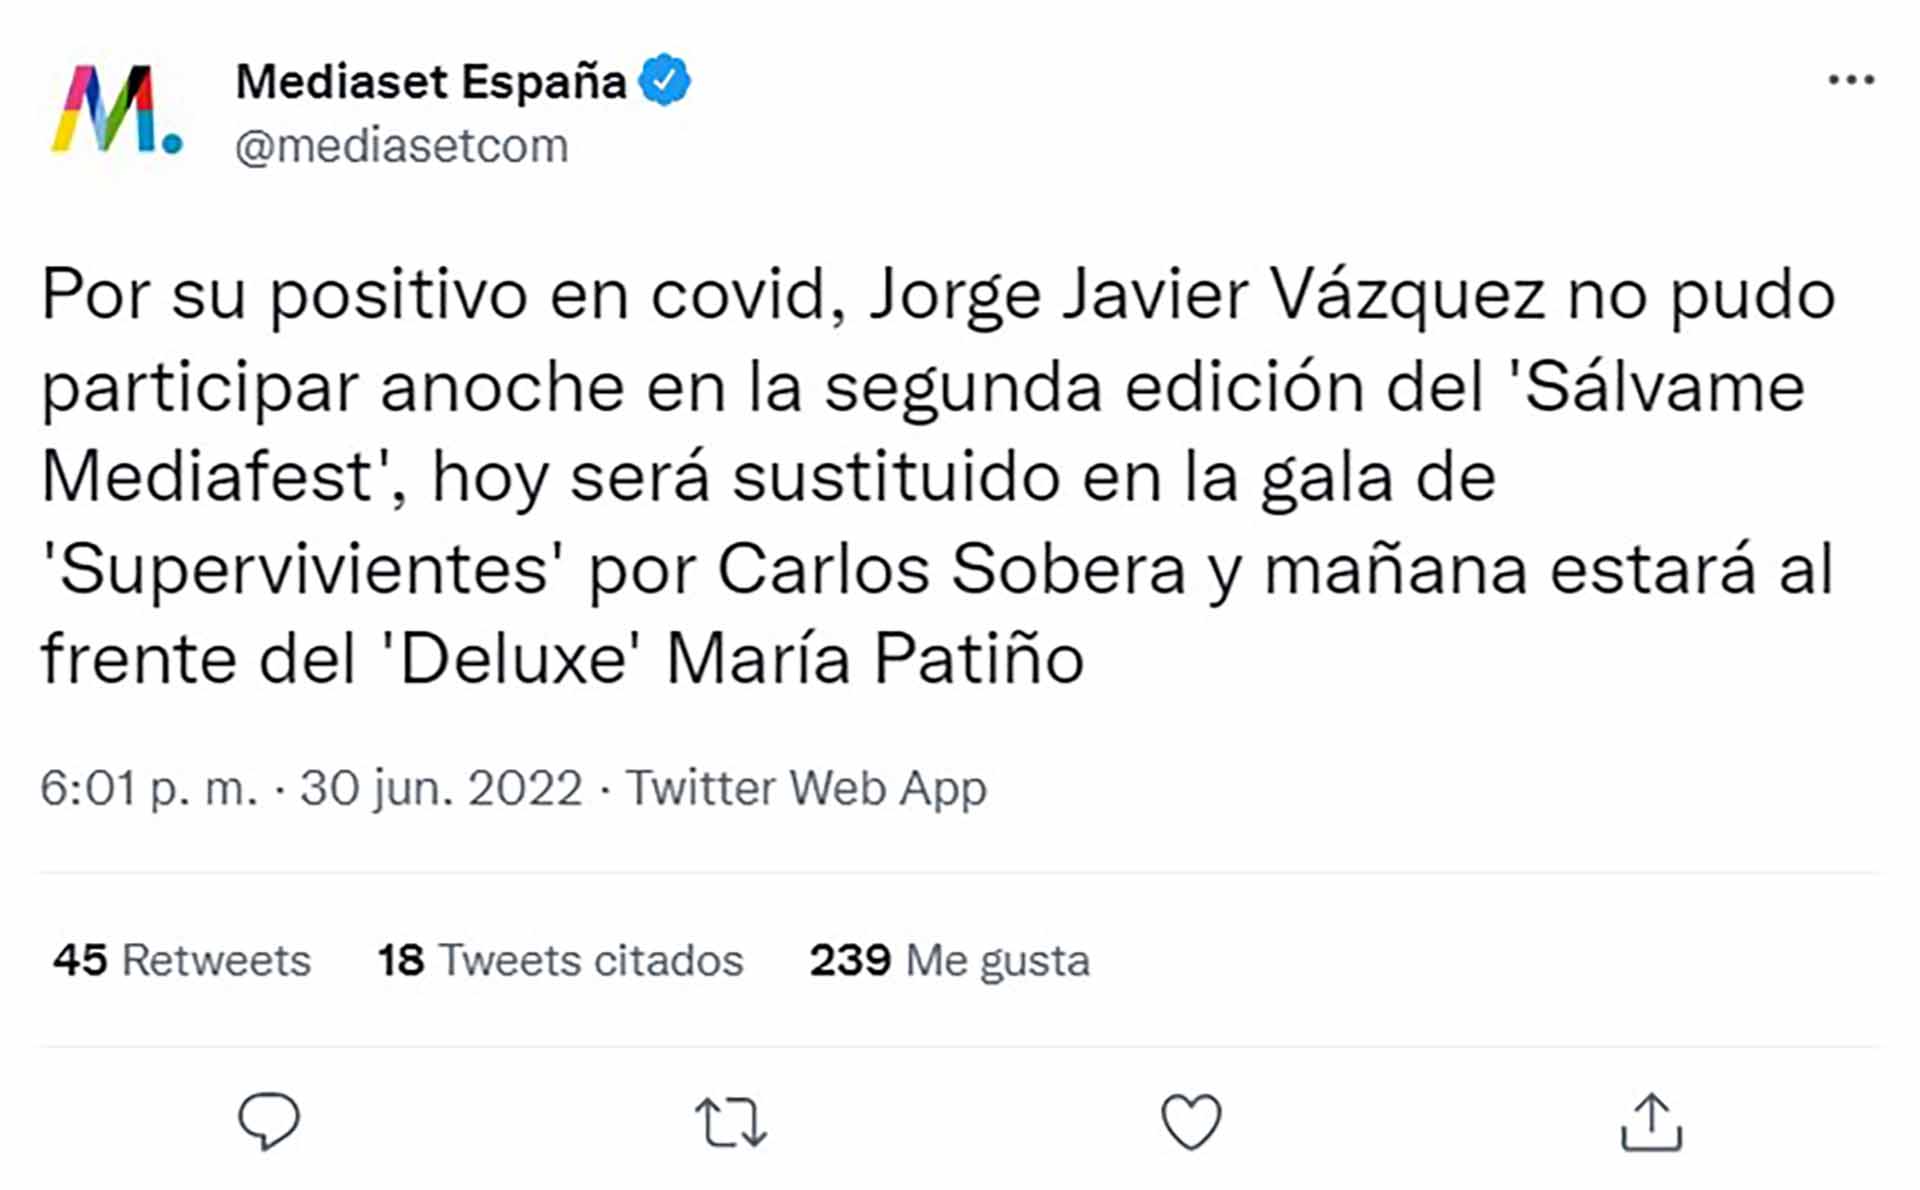 Jorge Javier Vázquez, positivo en Covid